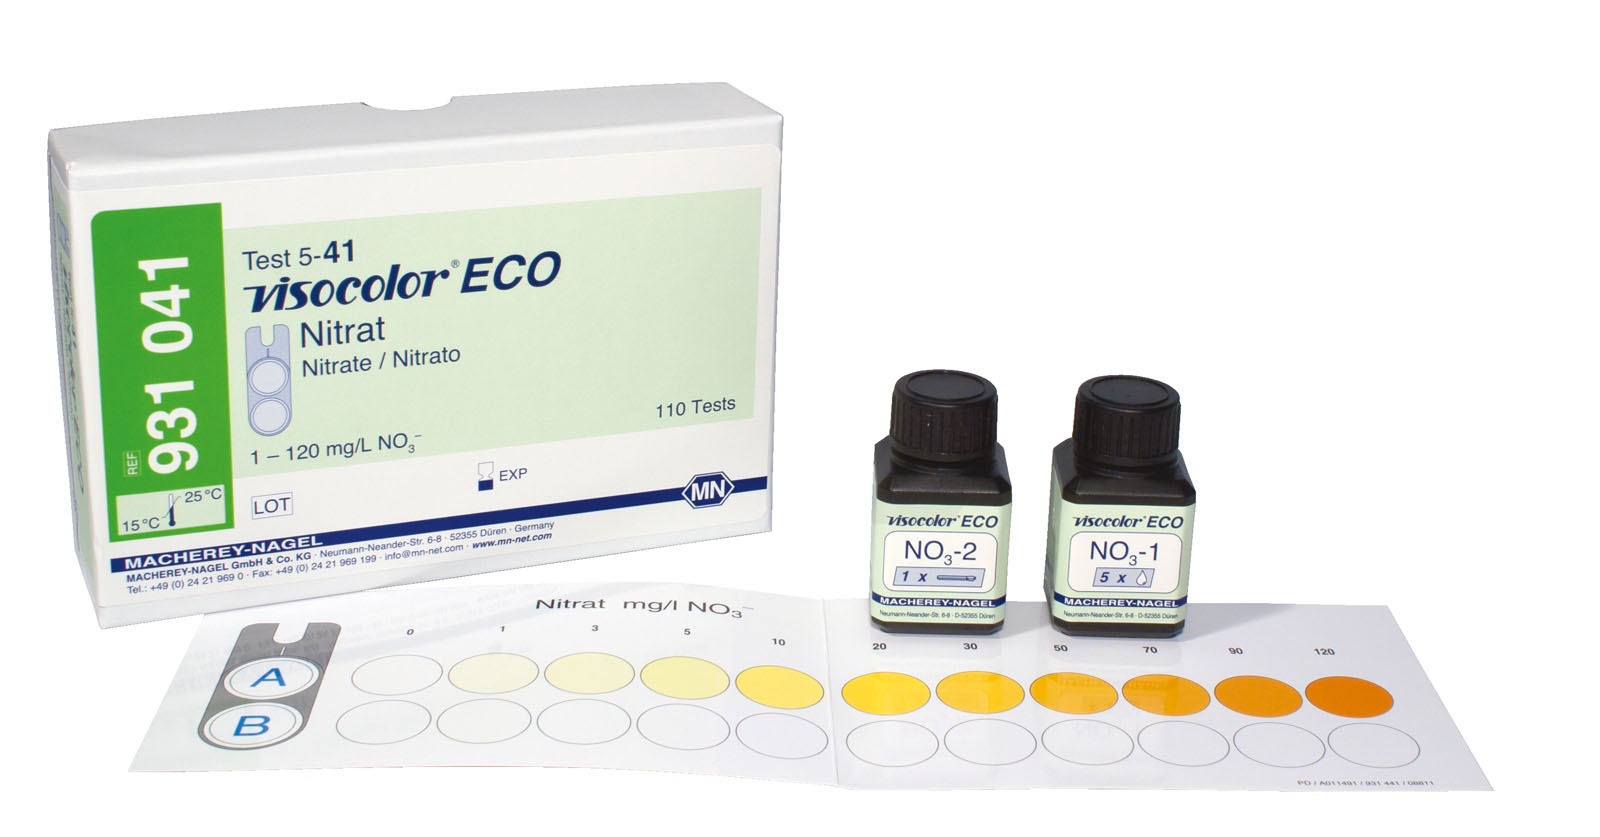 VISOCOLOR® ECO Nitrate Test Kit